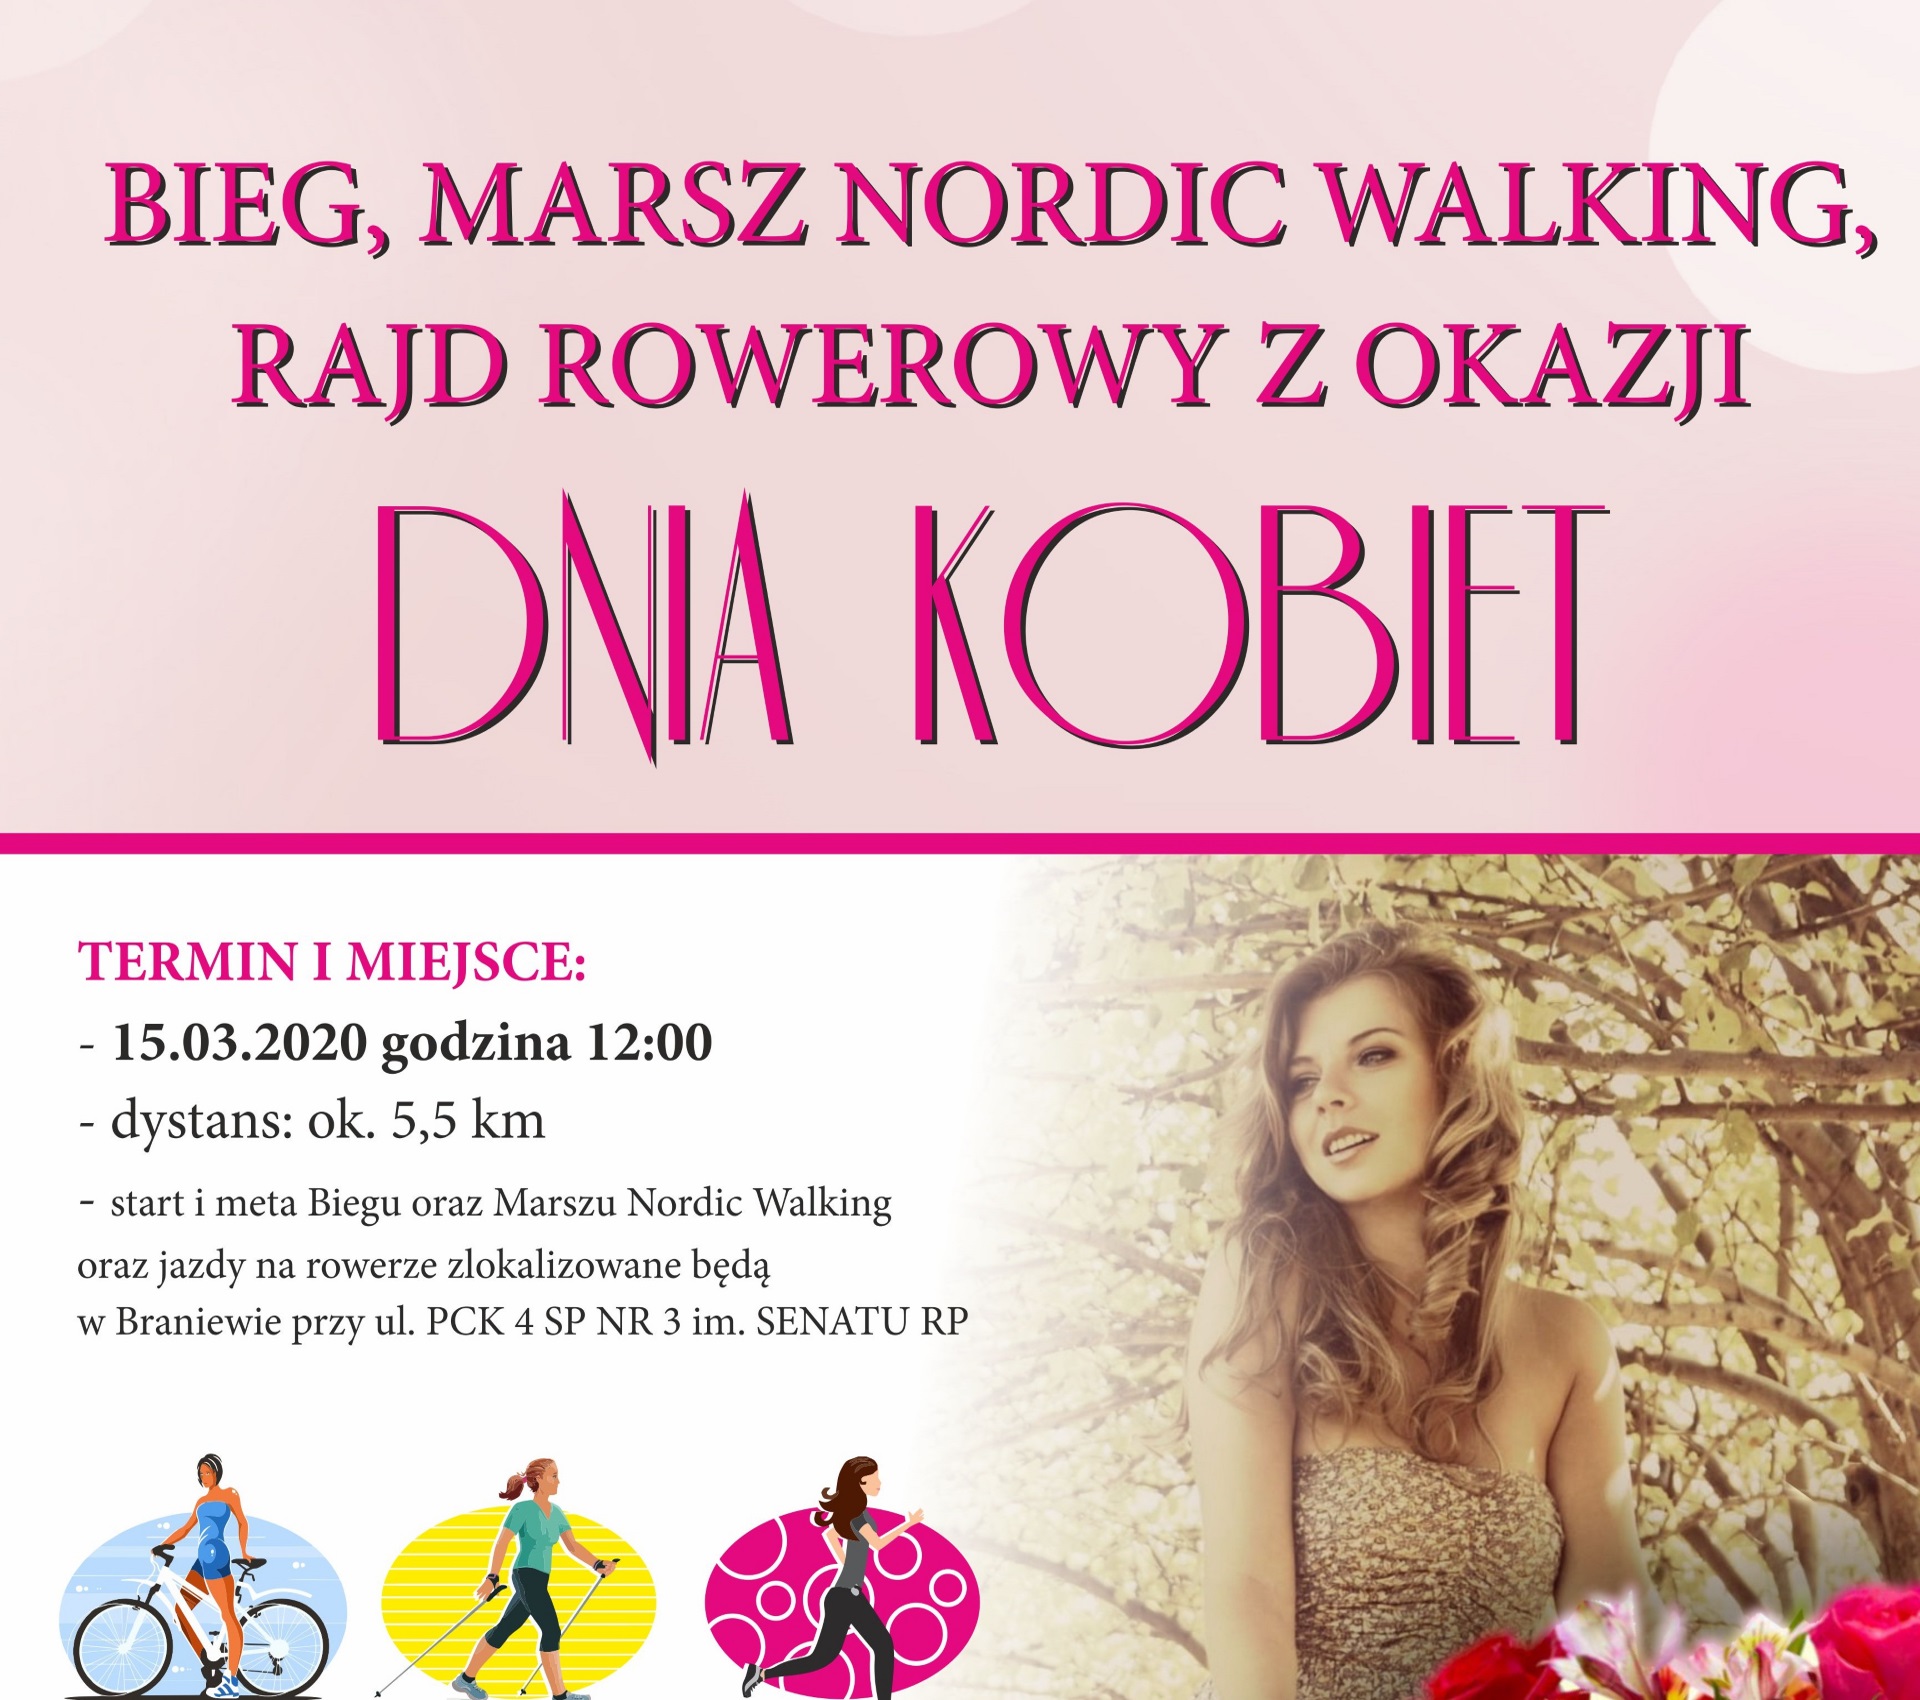 Zdjęcie, plakat zapraszające do Braniewa na zawody Bieg, Marsz Nordic Walking, Rajd Rowerowy z okazji Dnia Kobiet Braniewo 2020. Na plakacie zdjęcie kobiety oraz informacja o programie imprezy, kto jest organizatorem oraz godziny rozpoczęcia i zakończenia zawodów.    